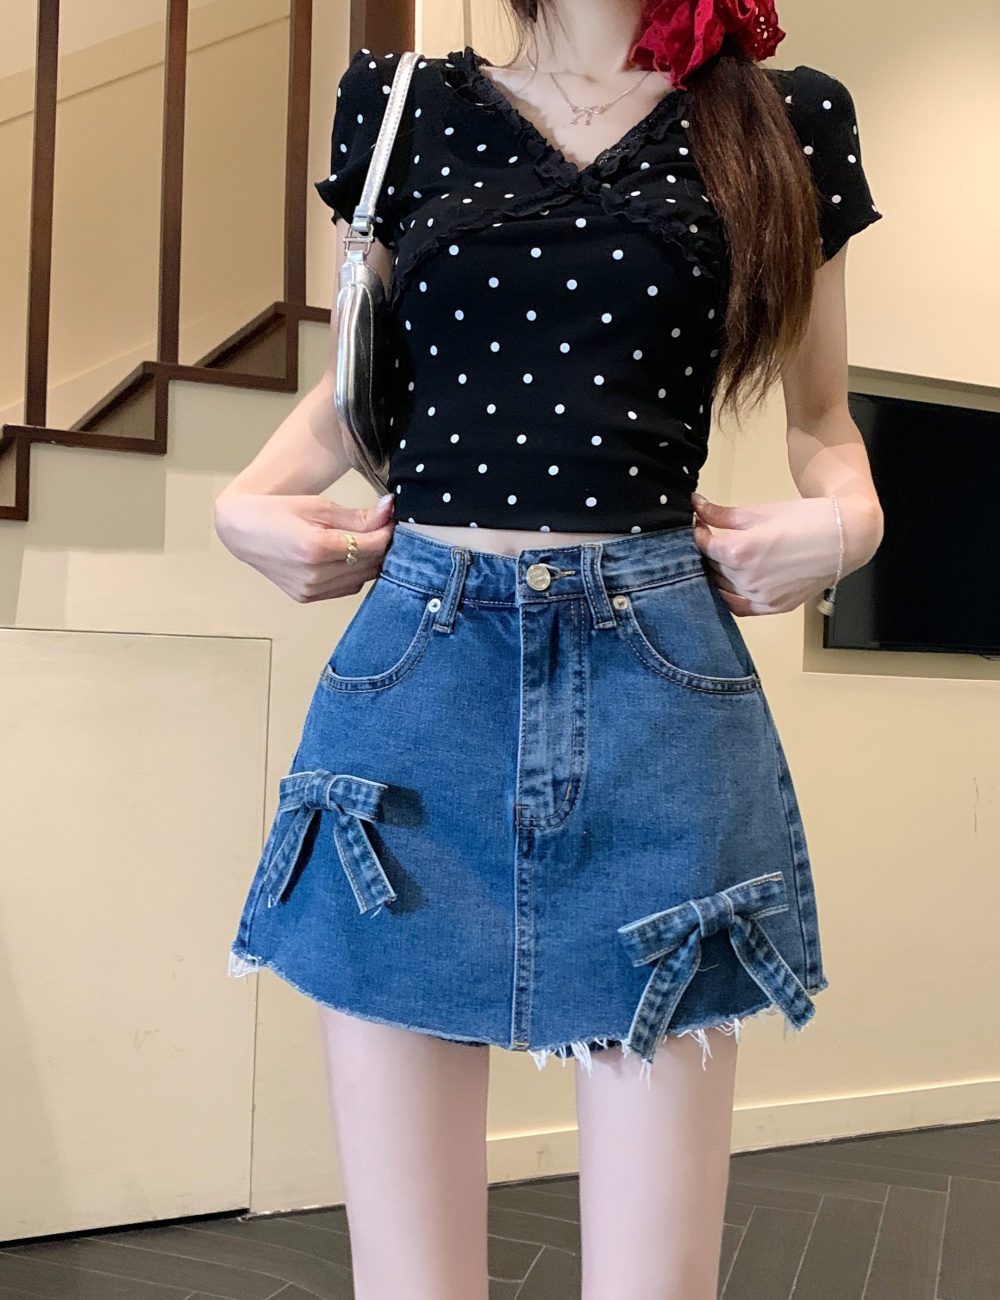 Korean style stereoscopic slim skirt A-line high waist short skirt